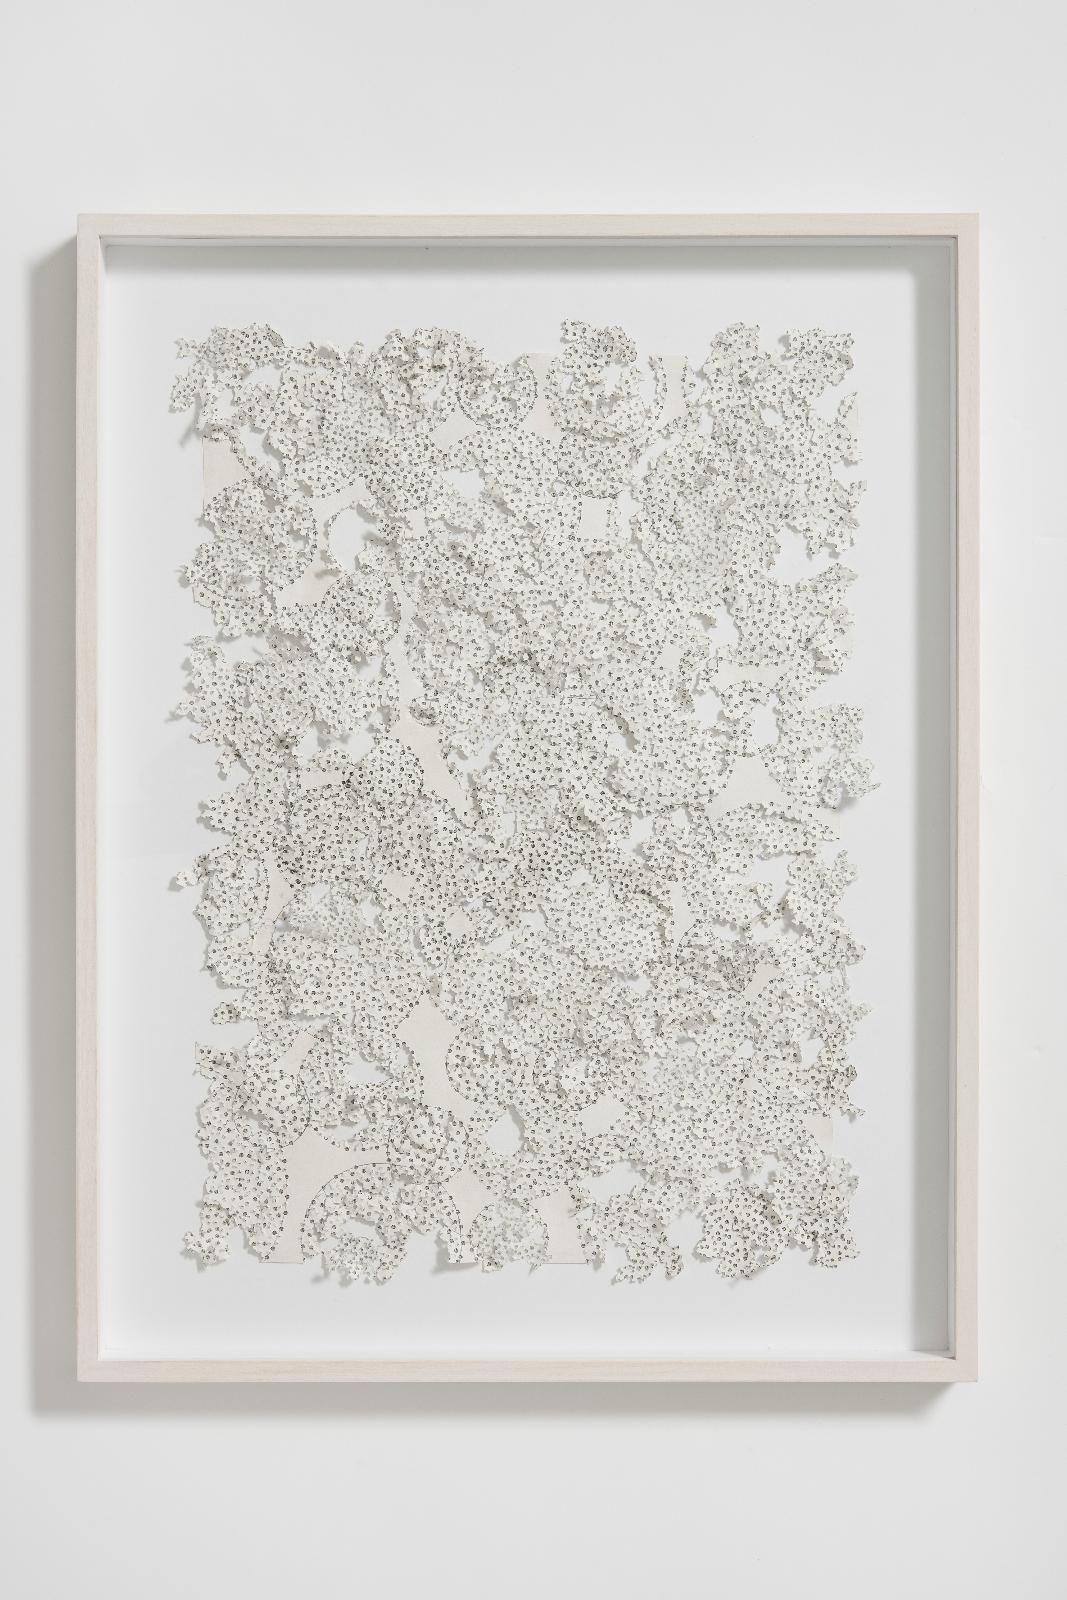 Martin Bruno Schmid, Bohrzeichnung (Kernbohrung), 2012, Bleistiftbohrung in Papier, 48 cm x 38 cm, gerahmt, Preis auf Anfrage